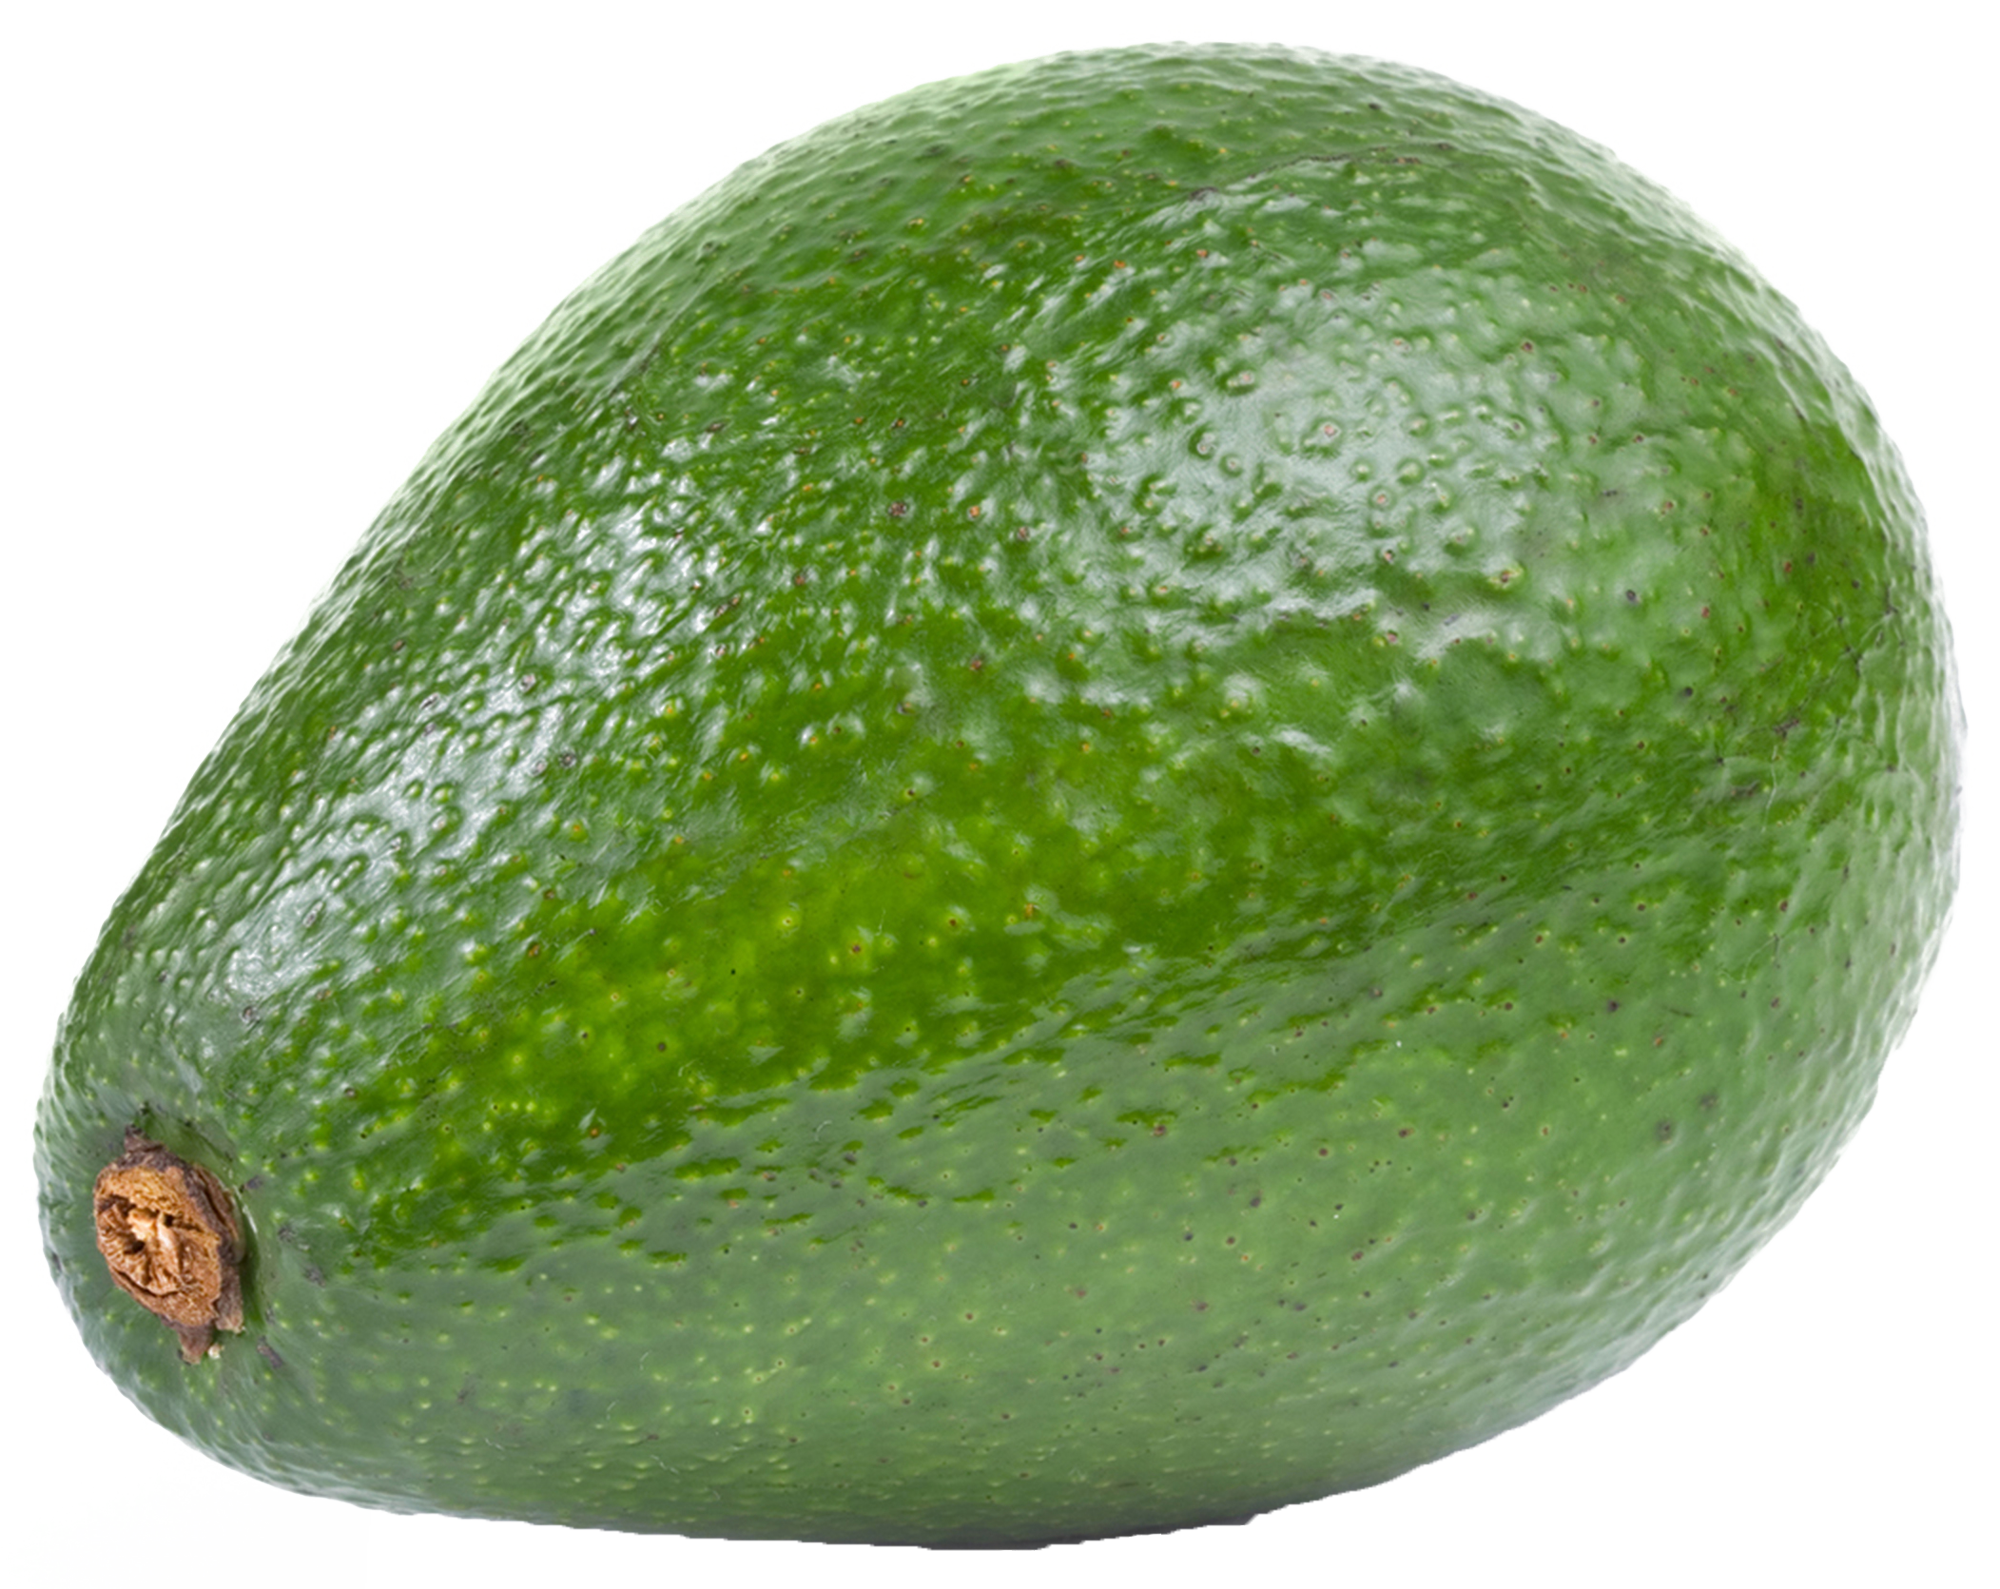 Avocado Png Pic PNG Image